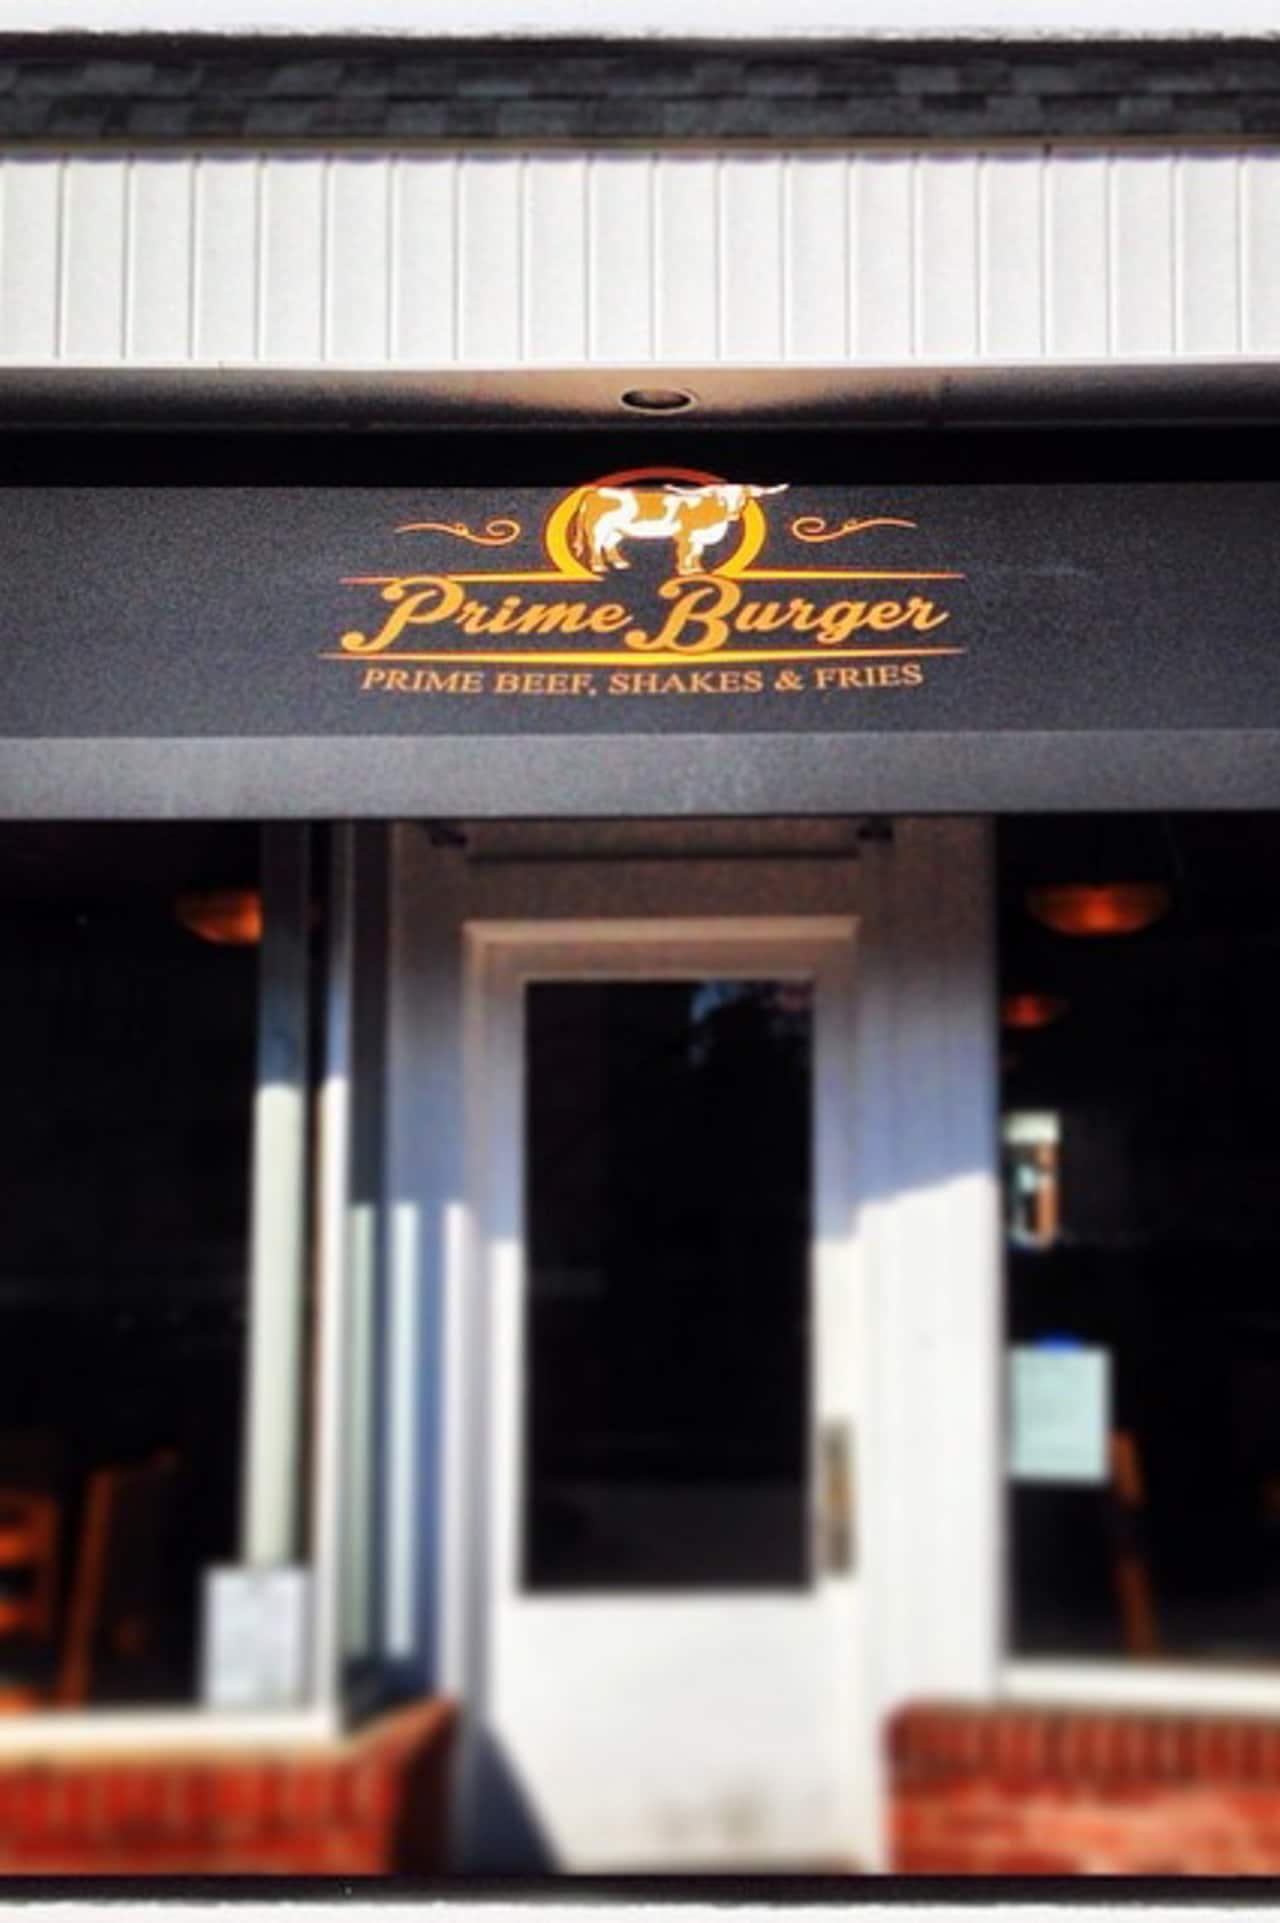 Prime Burger is now open in Ridgefield.